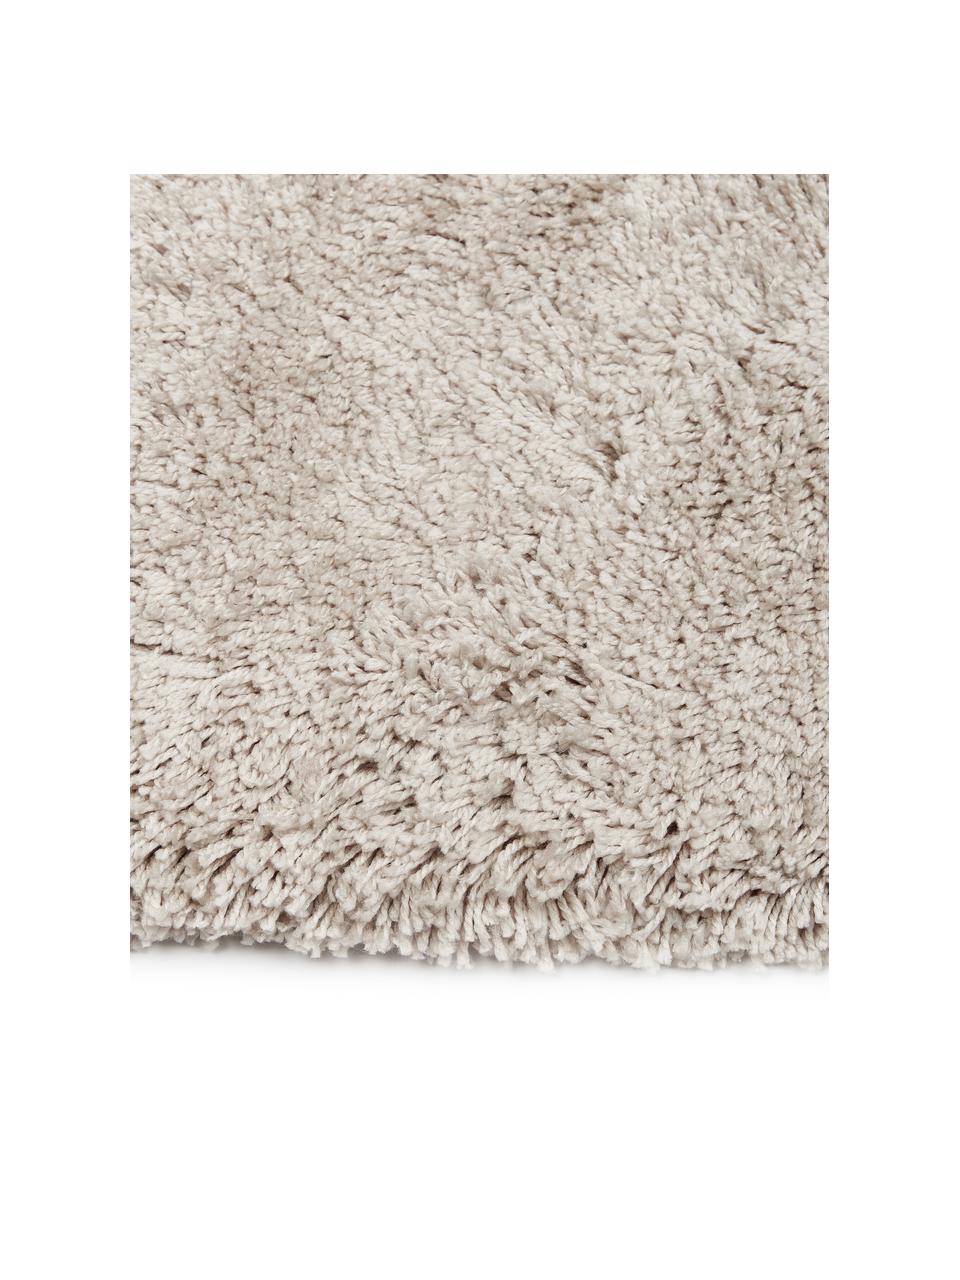 Flauschiger Hochflor-Teppich Dreamy mit Fransen, Flor: 100% Polyester, Creme, B 80 x L 150 cm (Größe XS)